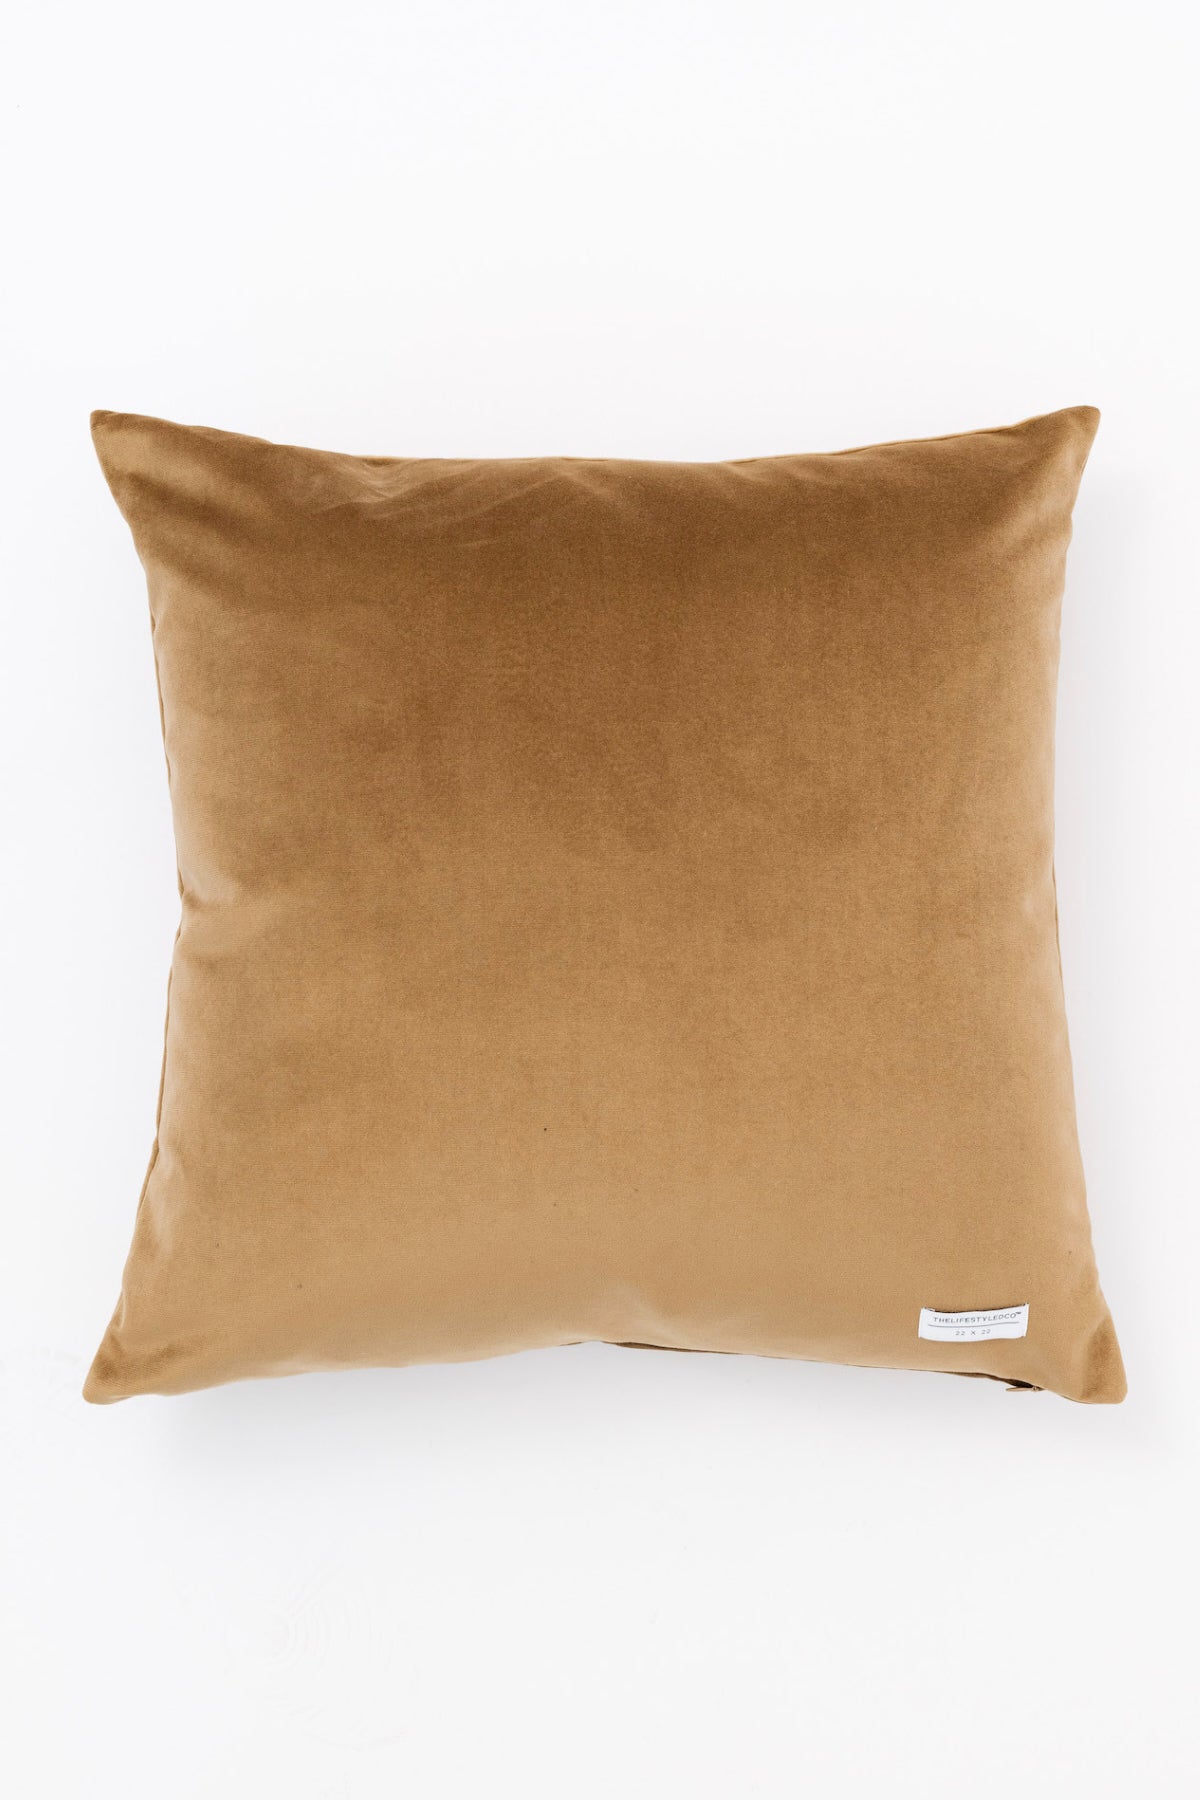 Ojai Performance Mohair Velvet Pillow - Almond - 2 Sizes